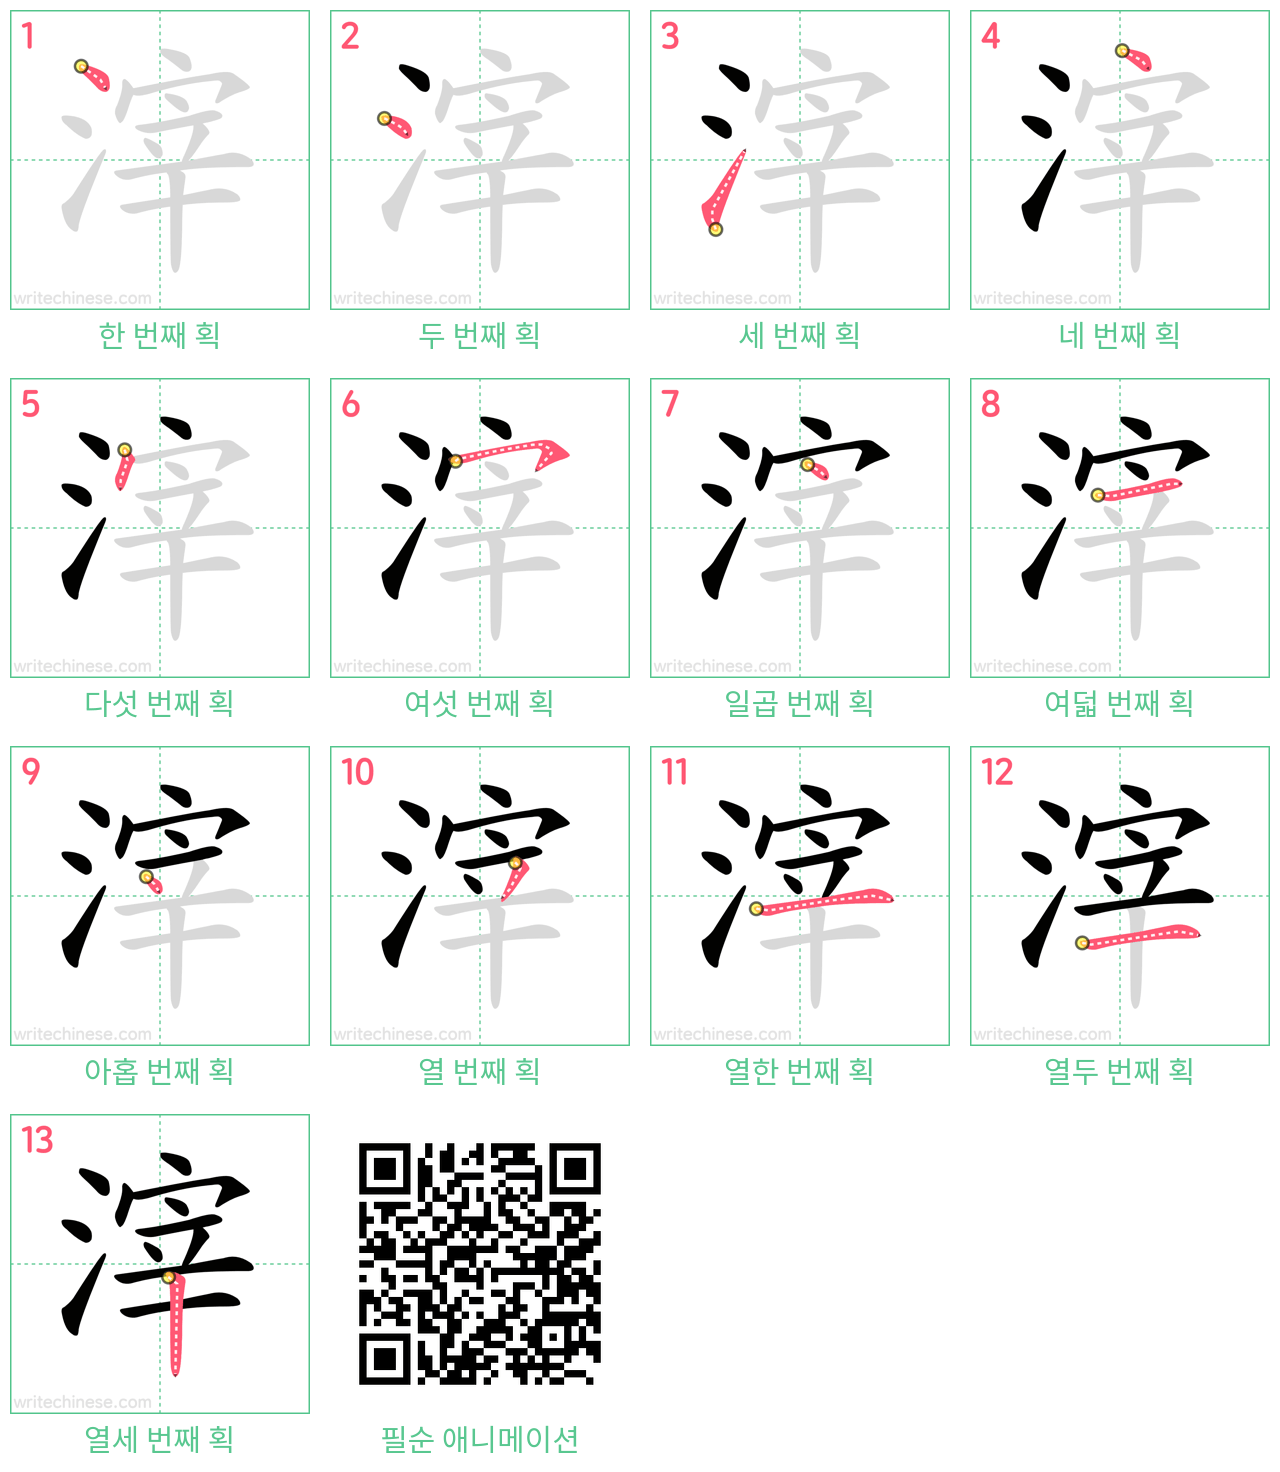 滓 step-by-step stroke order diagrams